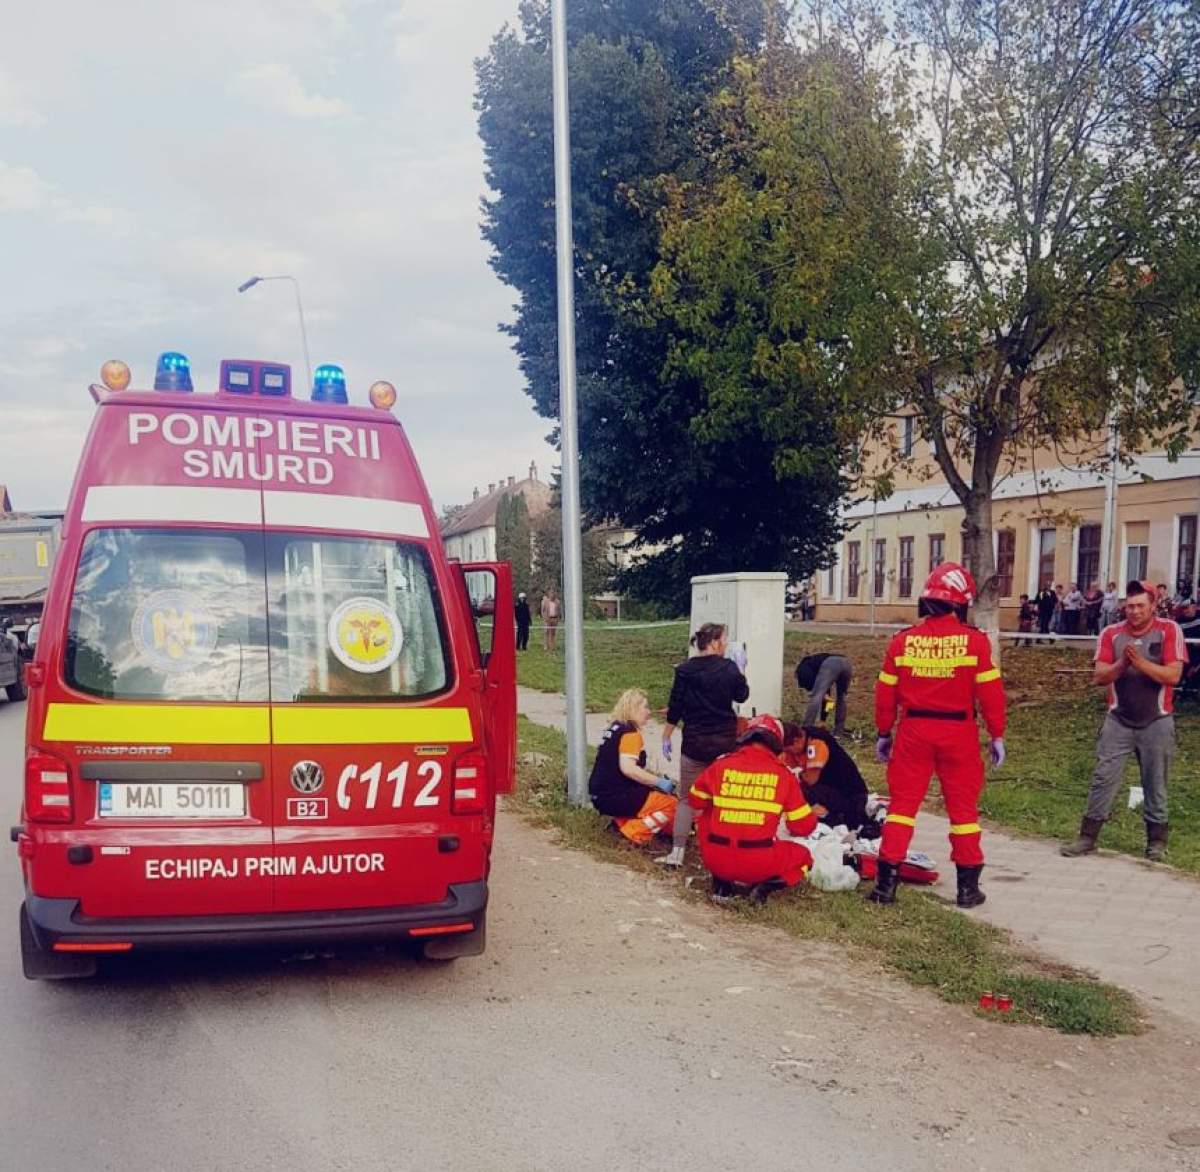 Tragedie fără margini, în Braşov. O fetiţă de opt ani a fost ucisă pe trotuar, iar alte două persoane sunt în stare gravă